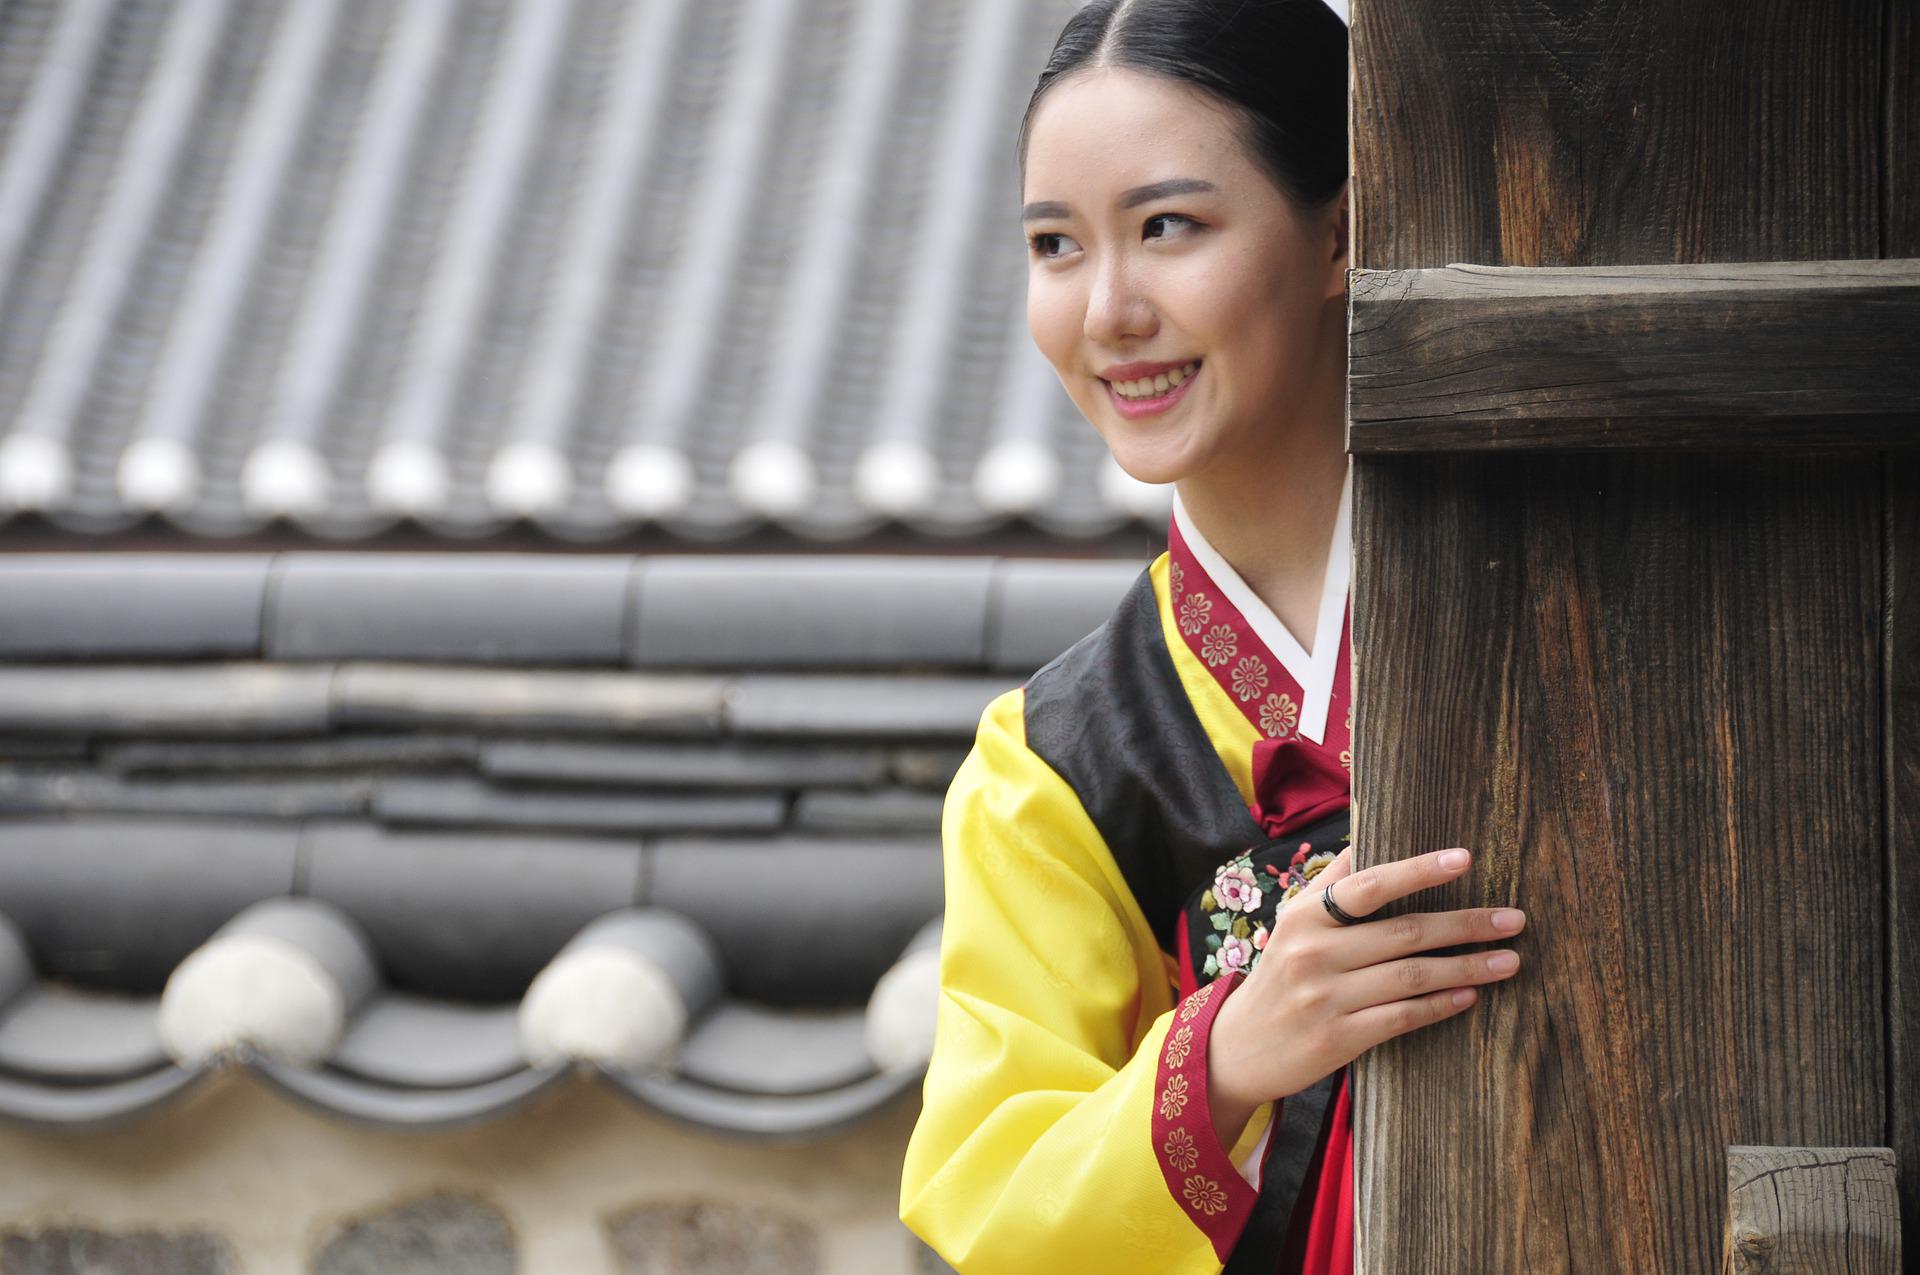 Korean girl smiling